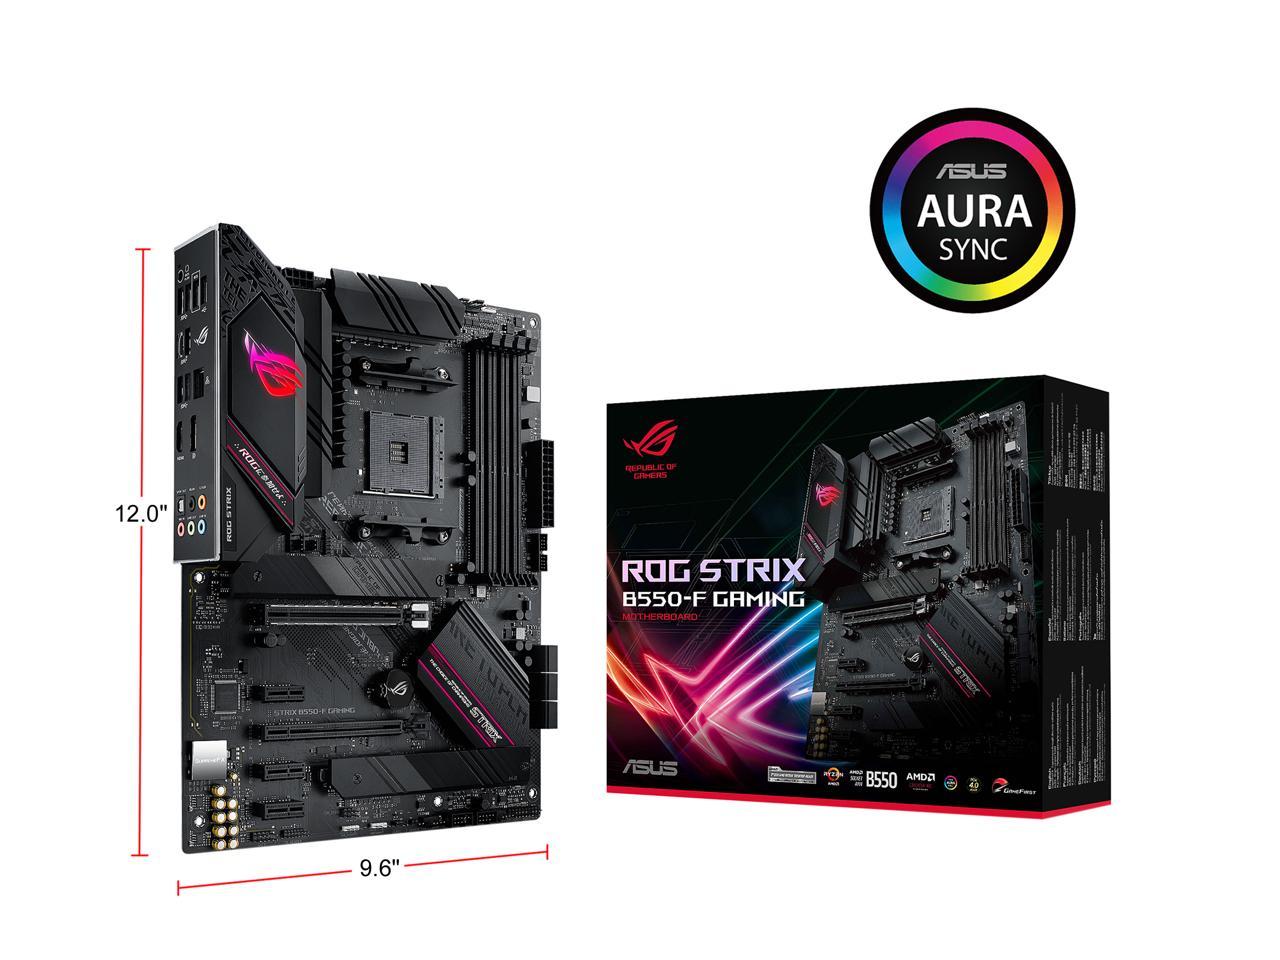 ASUS ROG STRIX B550-F GAMING AM4 AMD B550 SATA 6Gb/s ATX AMD Motherboard $159.99 At Newegg After Promo Code.